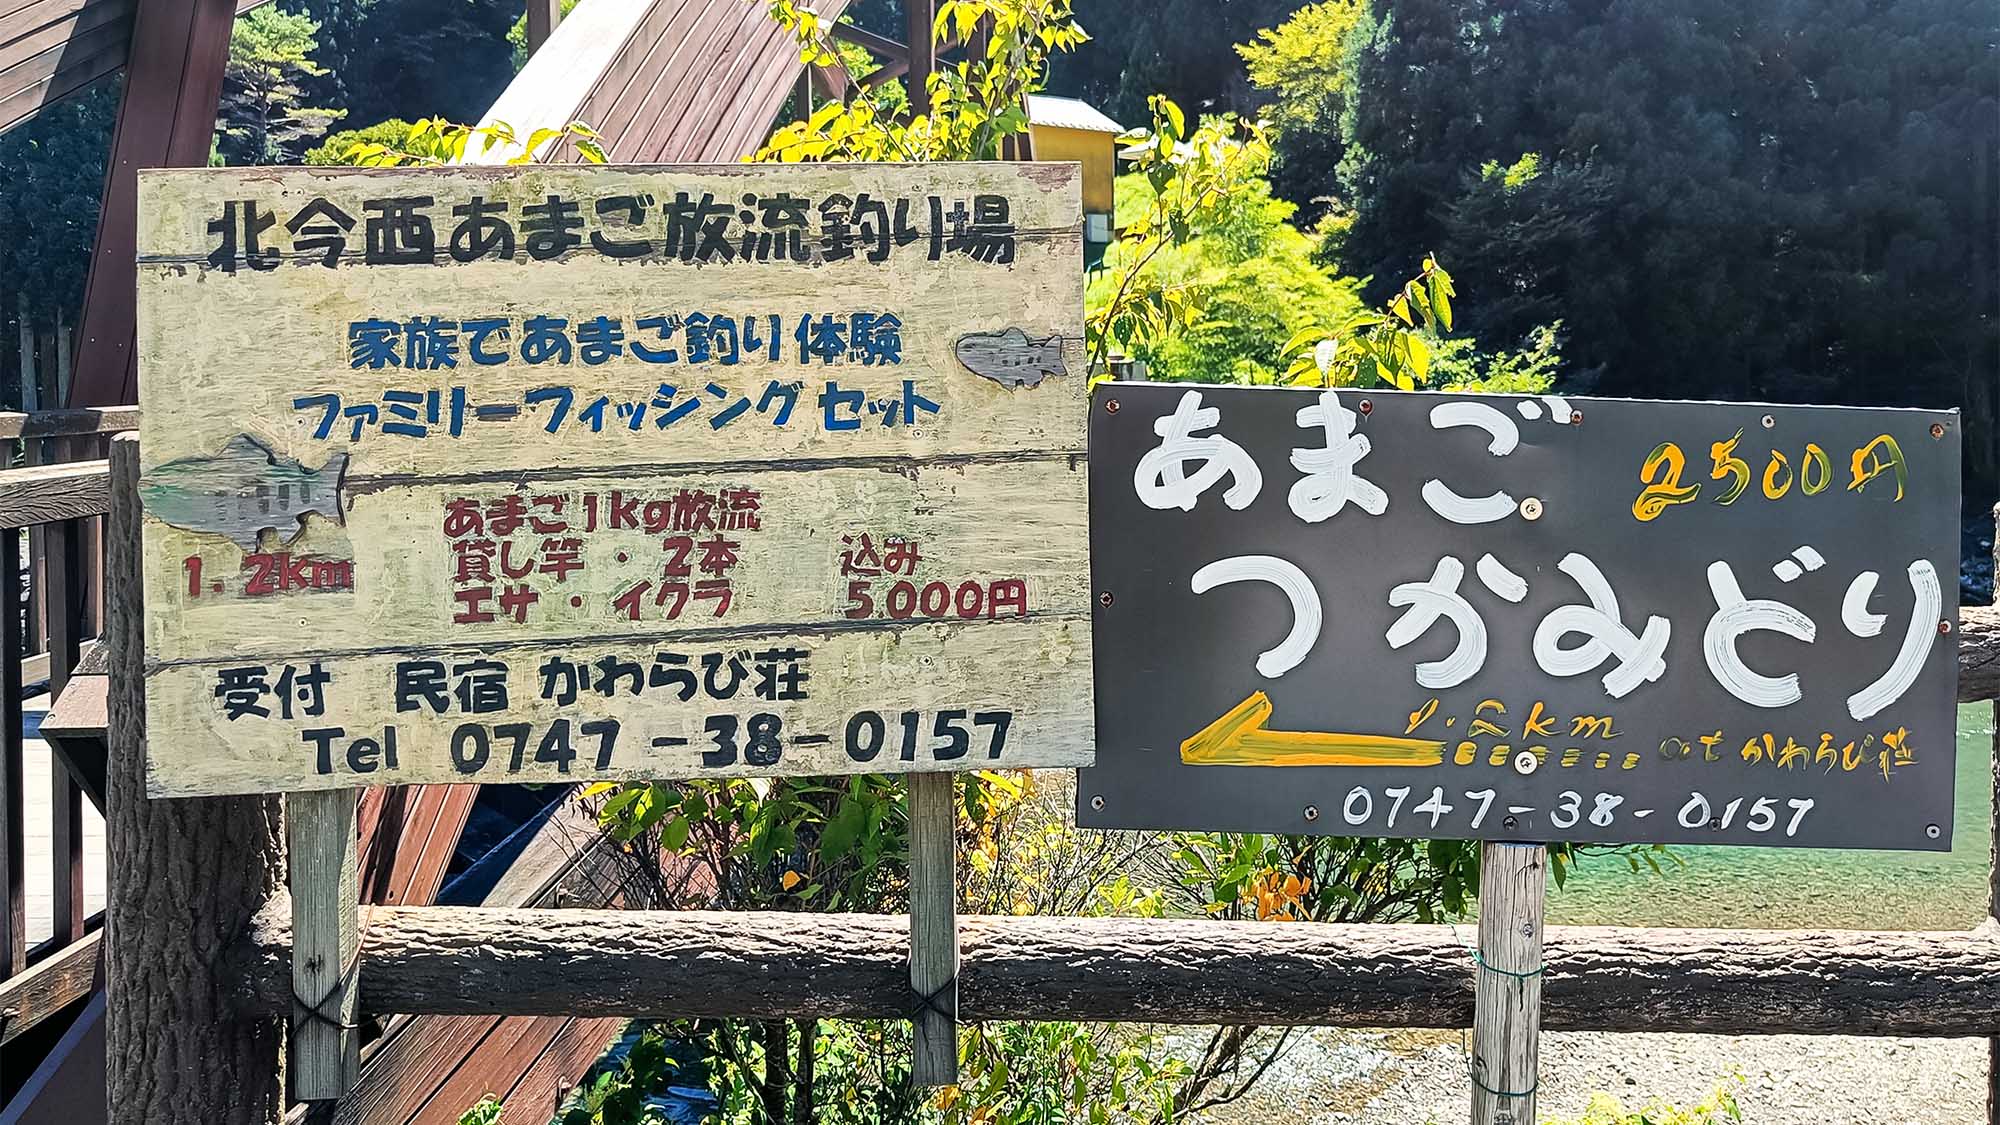 ・野迫川村の名物、アマゴ釣りを楽しめます。当ホテルで入漁券を販売中♪